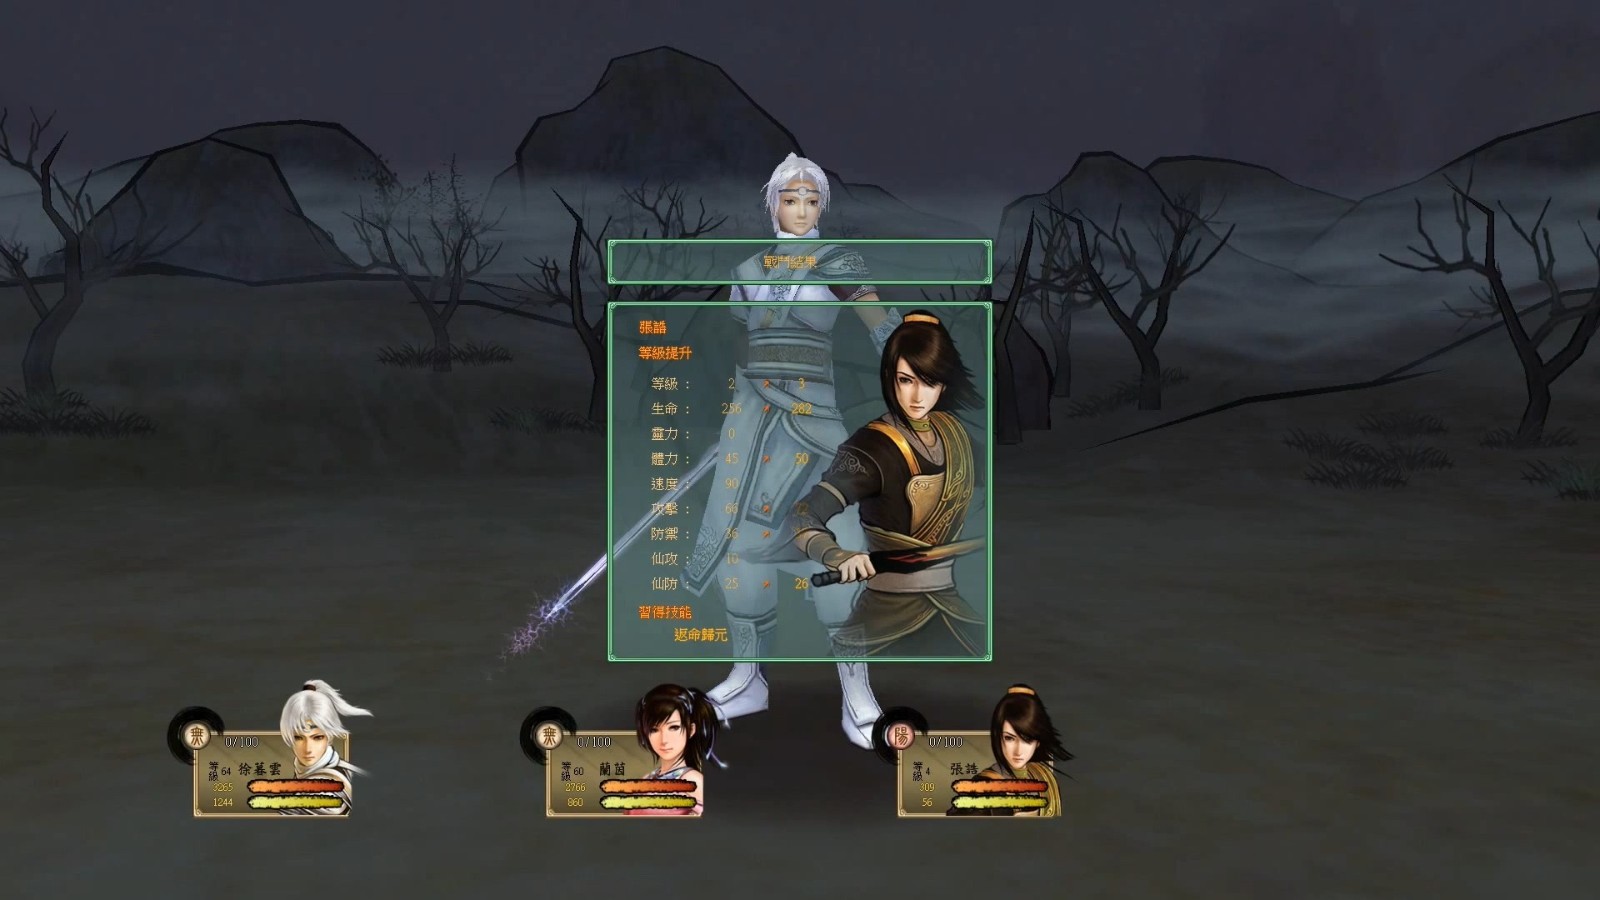 《轩辕剑伍系列三部曲》在Steam发售 支持手柄操控